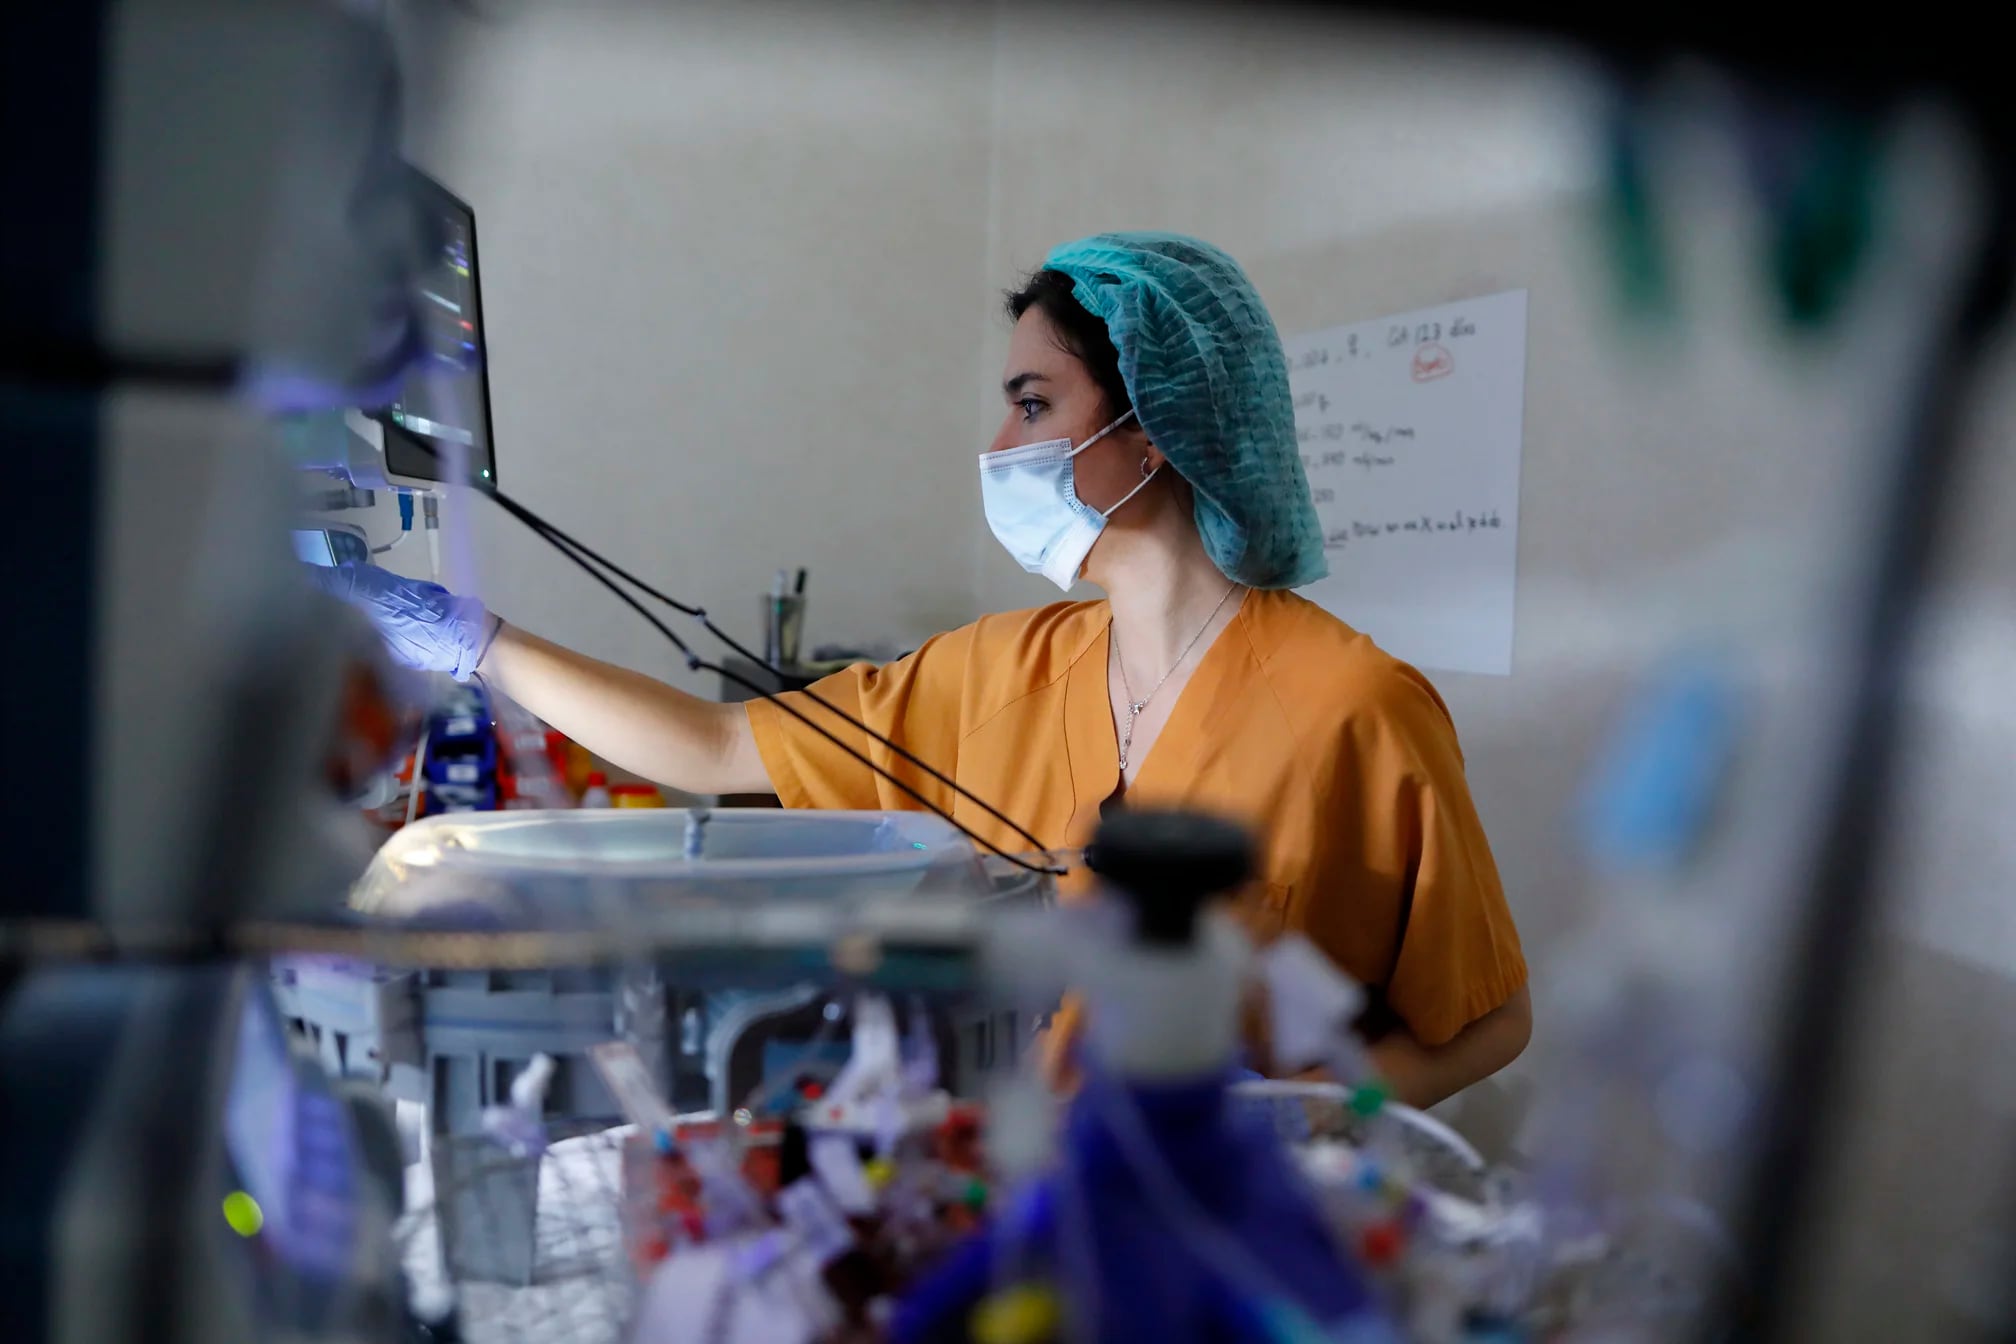 El proyecto de la placenta artificial está siendo impulsado por especialistas de medicina, biología, ingeniería, enfermería, entre otros (Marc Guillen)